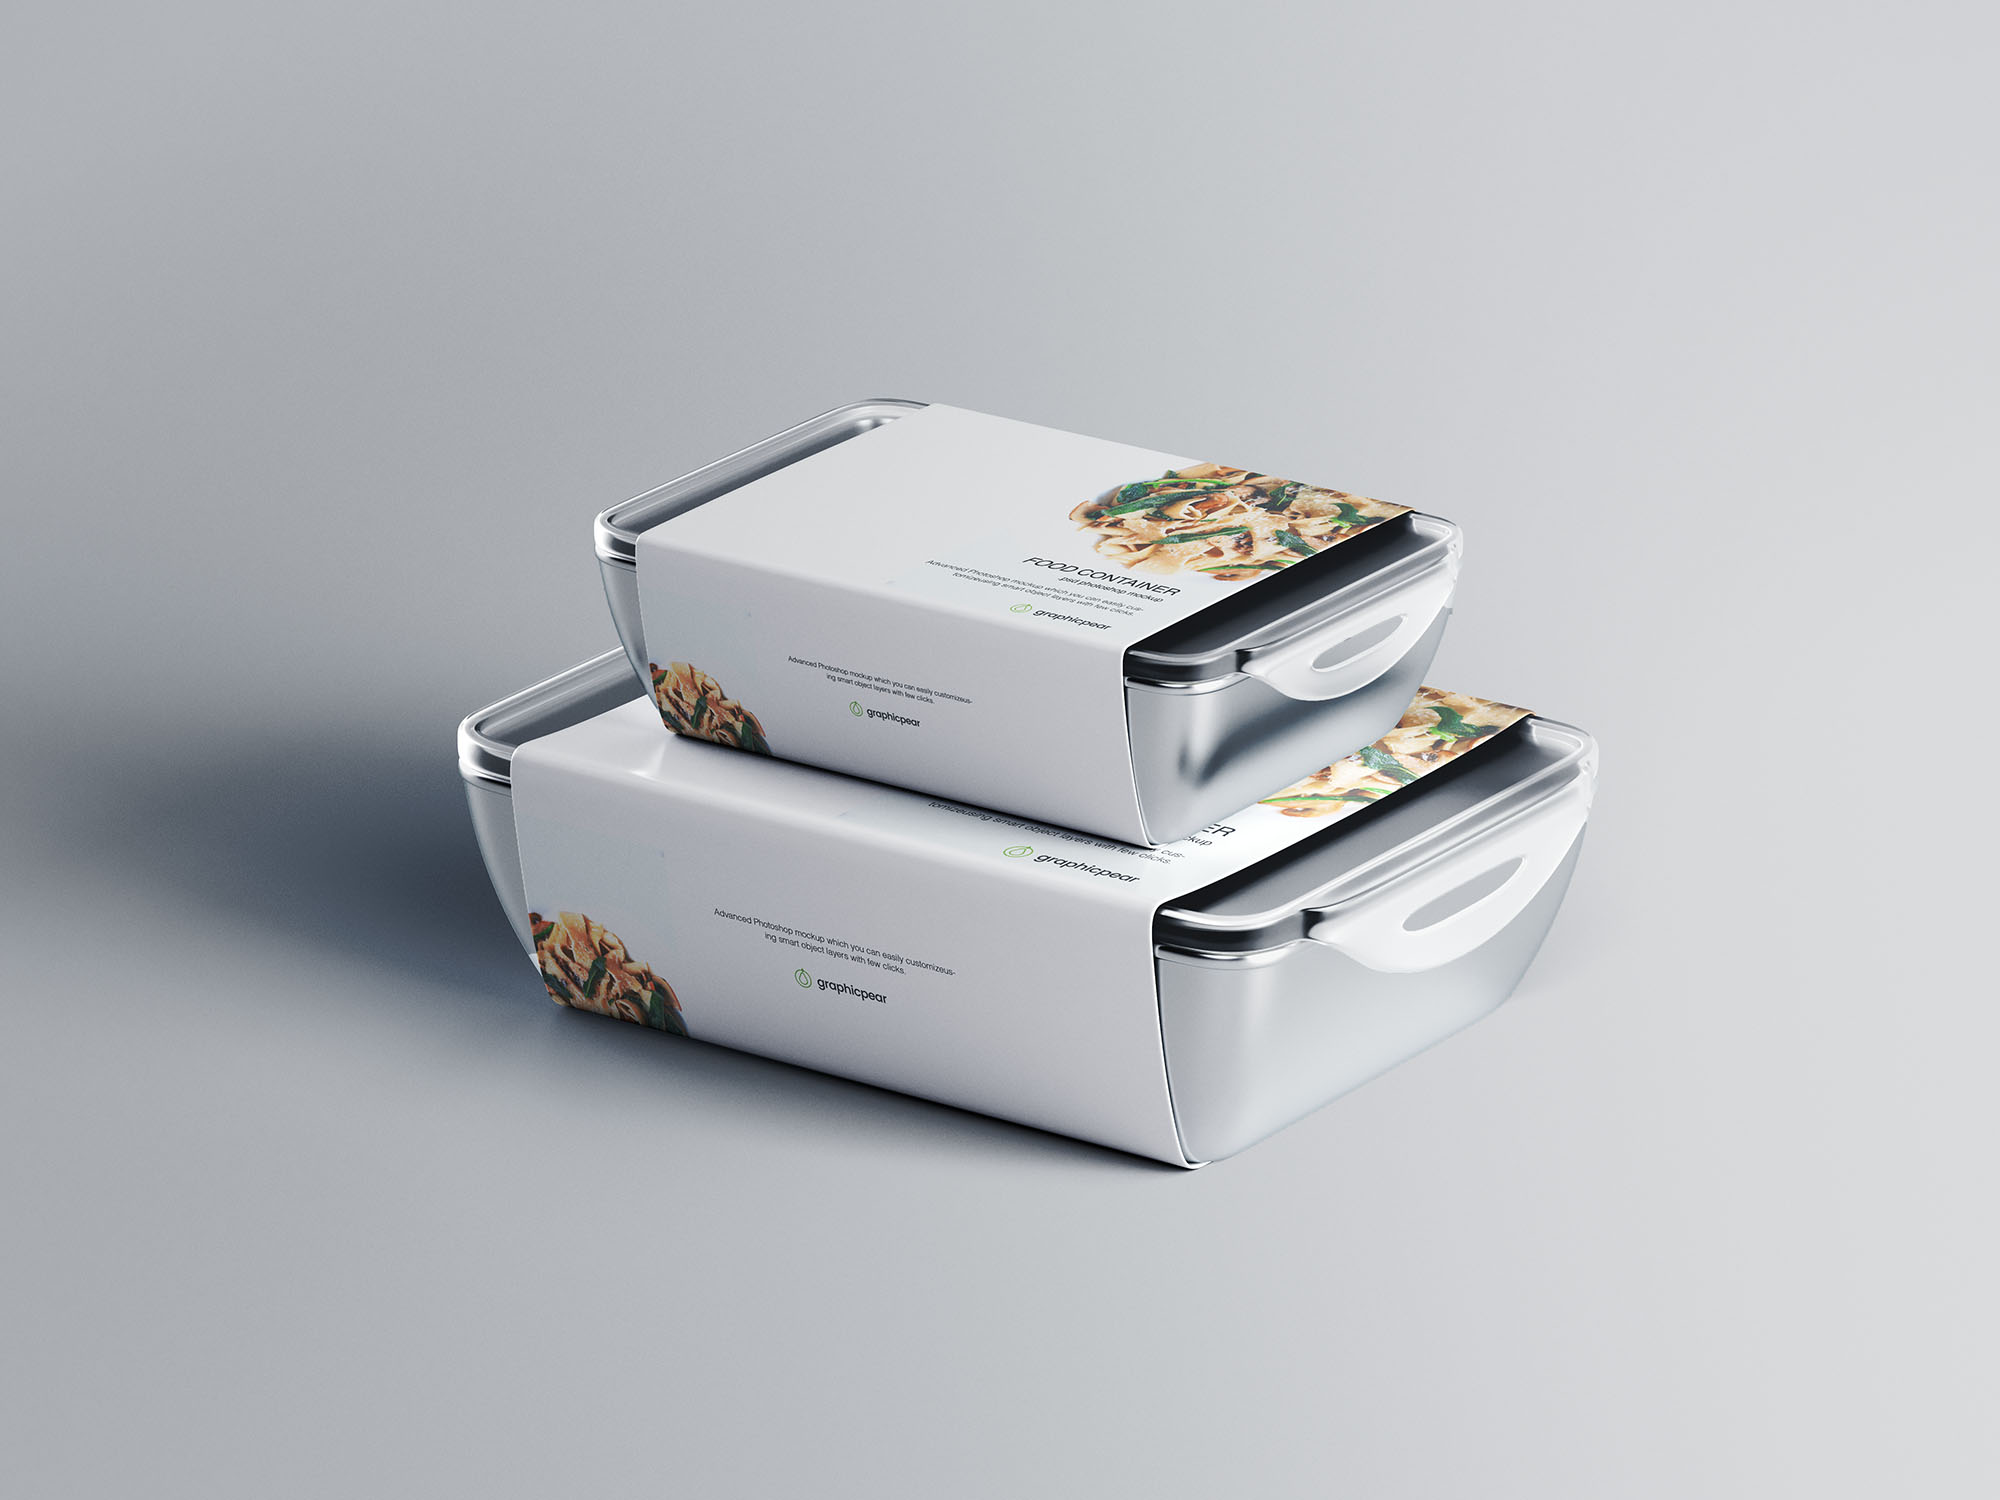 带标签快餐包装盒设计效果图样机模板 Food Container Mockup with Label插图